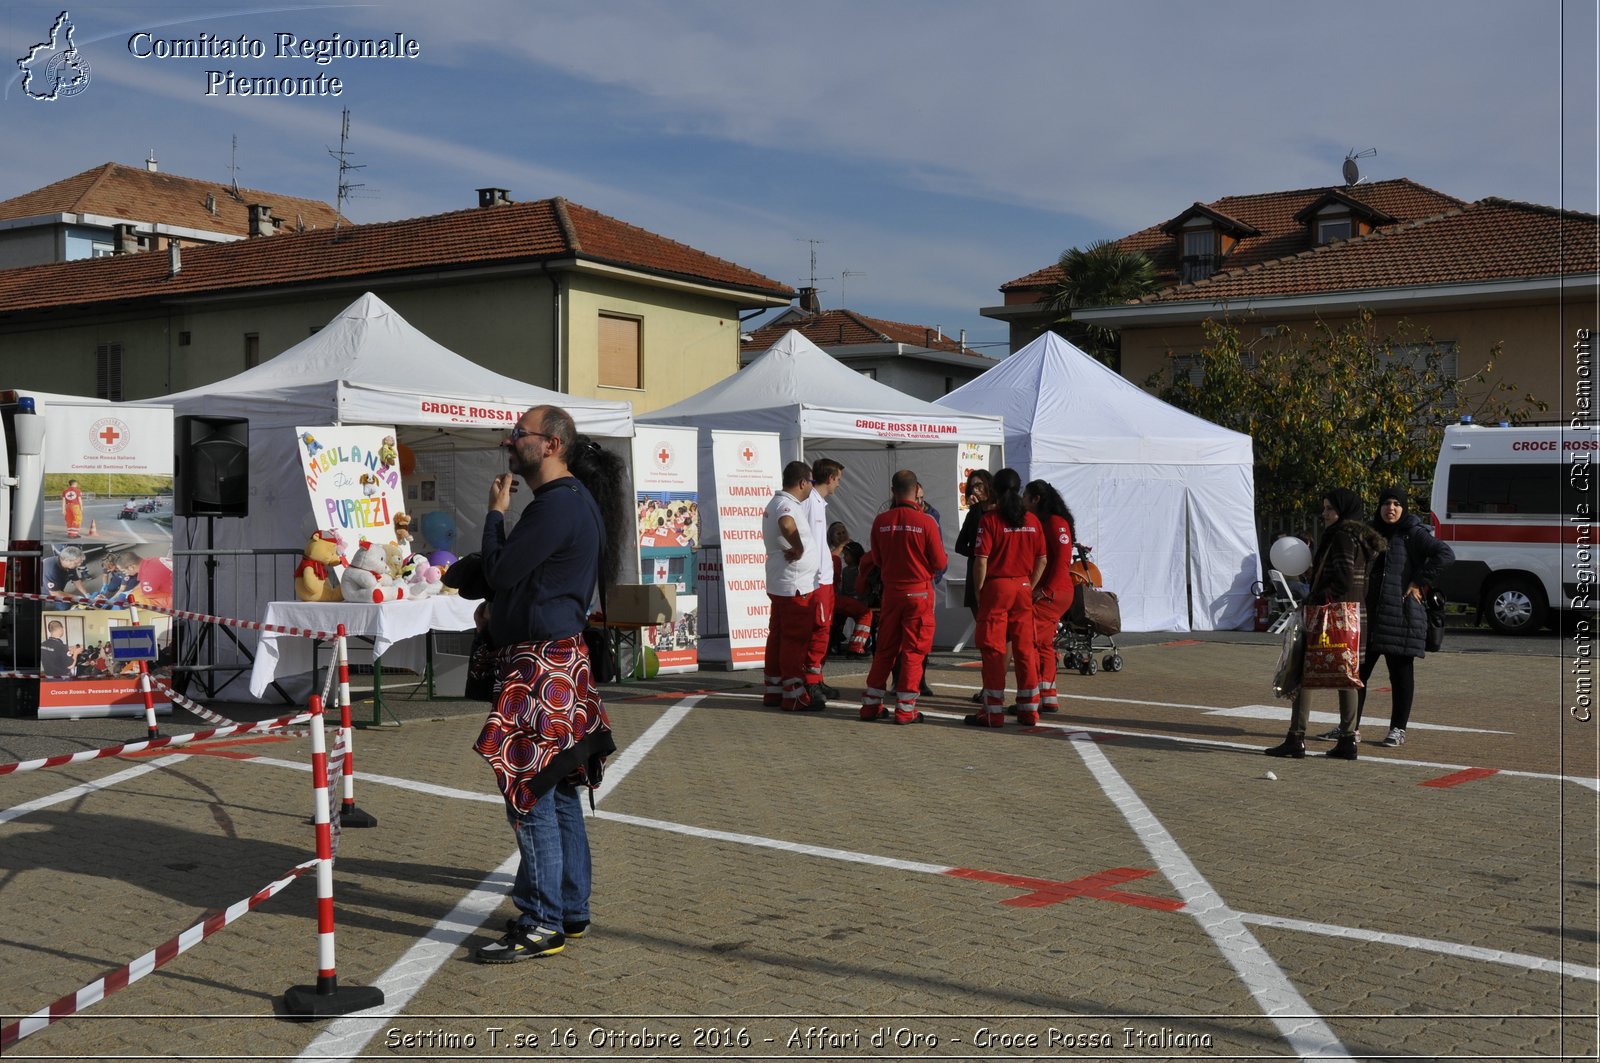 Settimo T.se 16 Ottobre 2016 - Affari d'Oro - Croce Rossa Italiana- Comitato Regionale del Piemonte